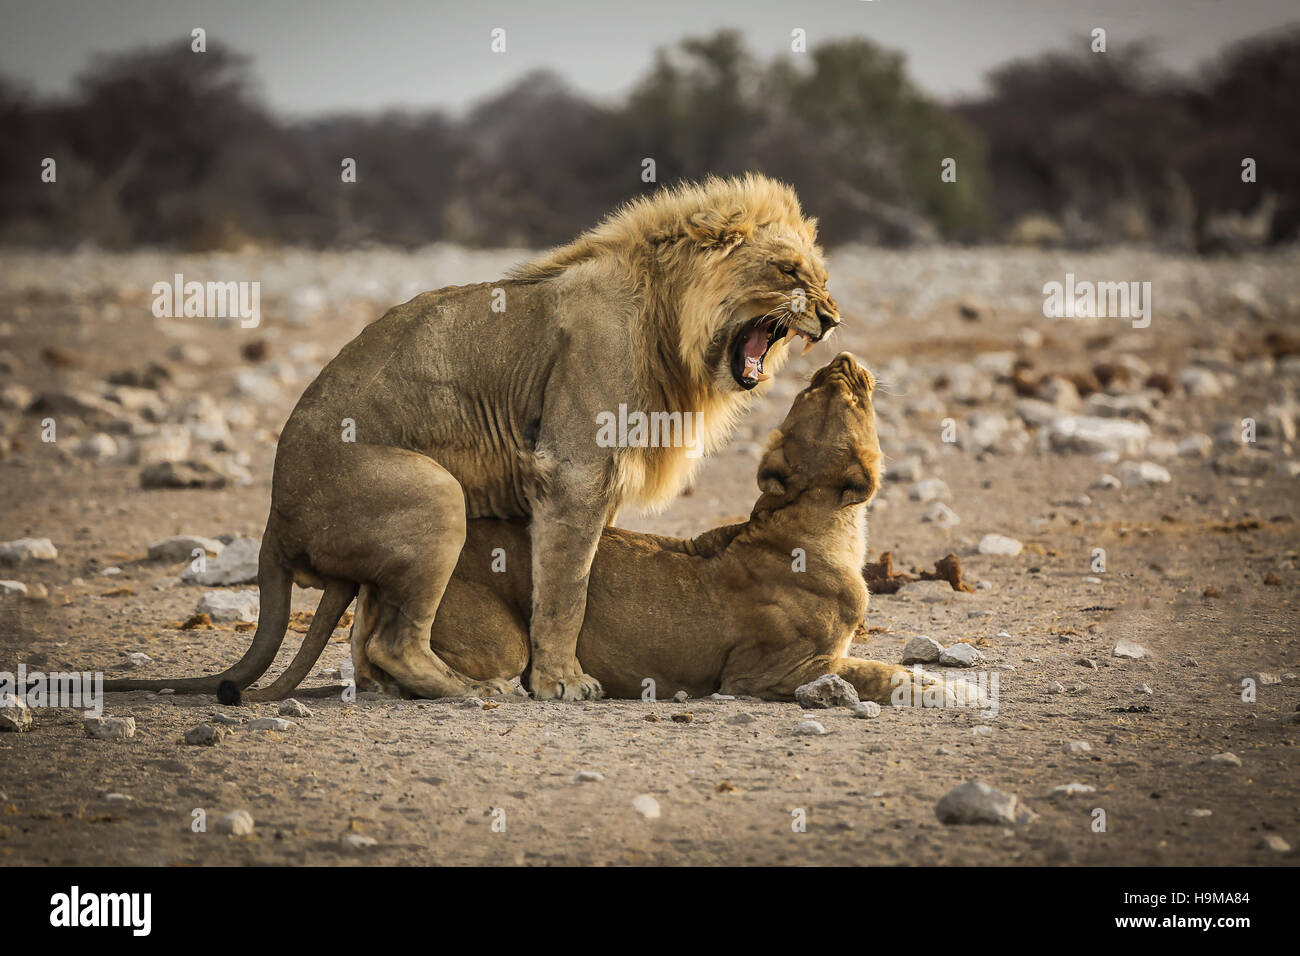 Lion and Lioness matting at Etosha National Park, Namibia Stock Photo